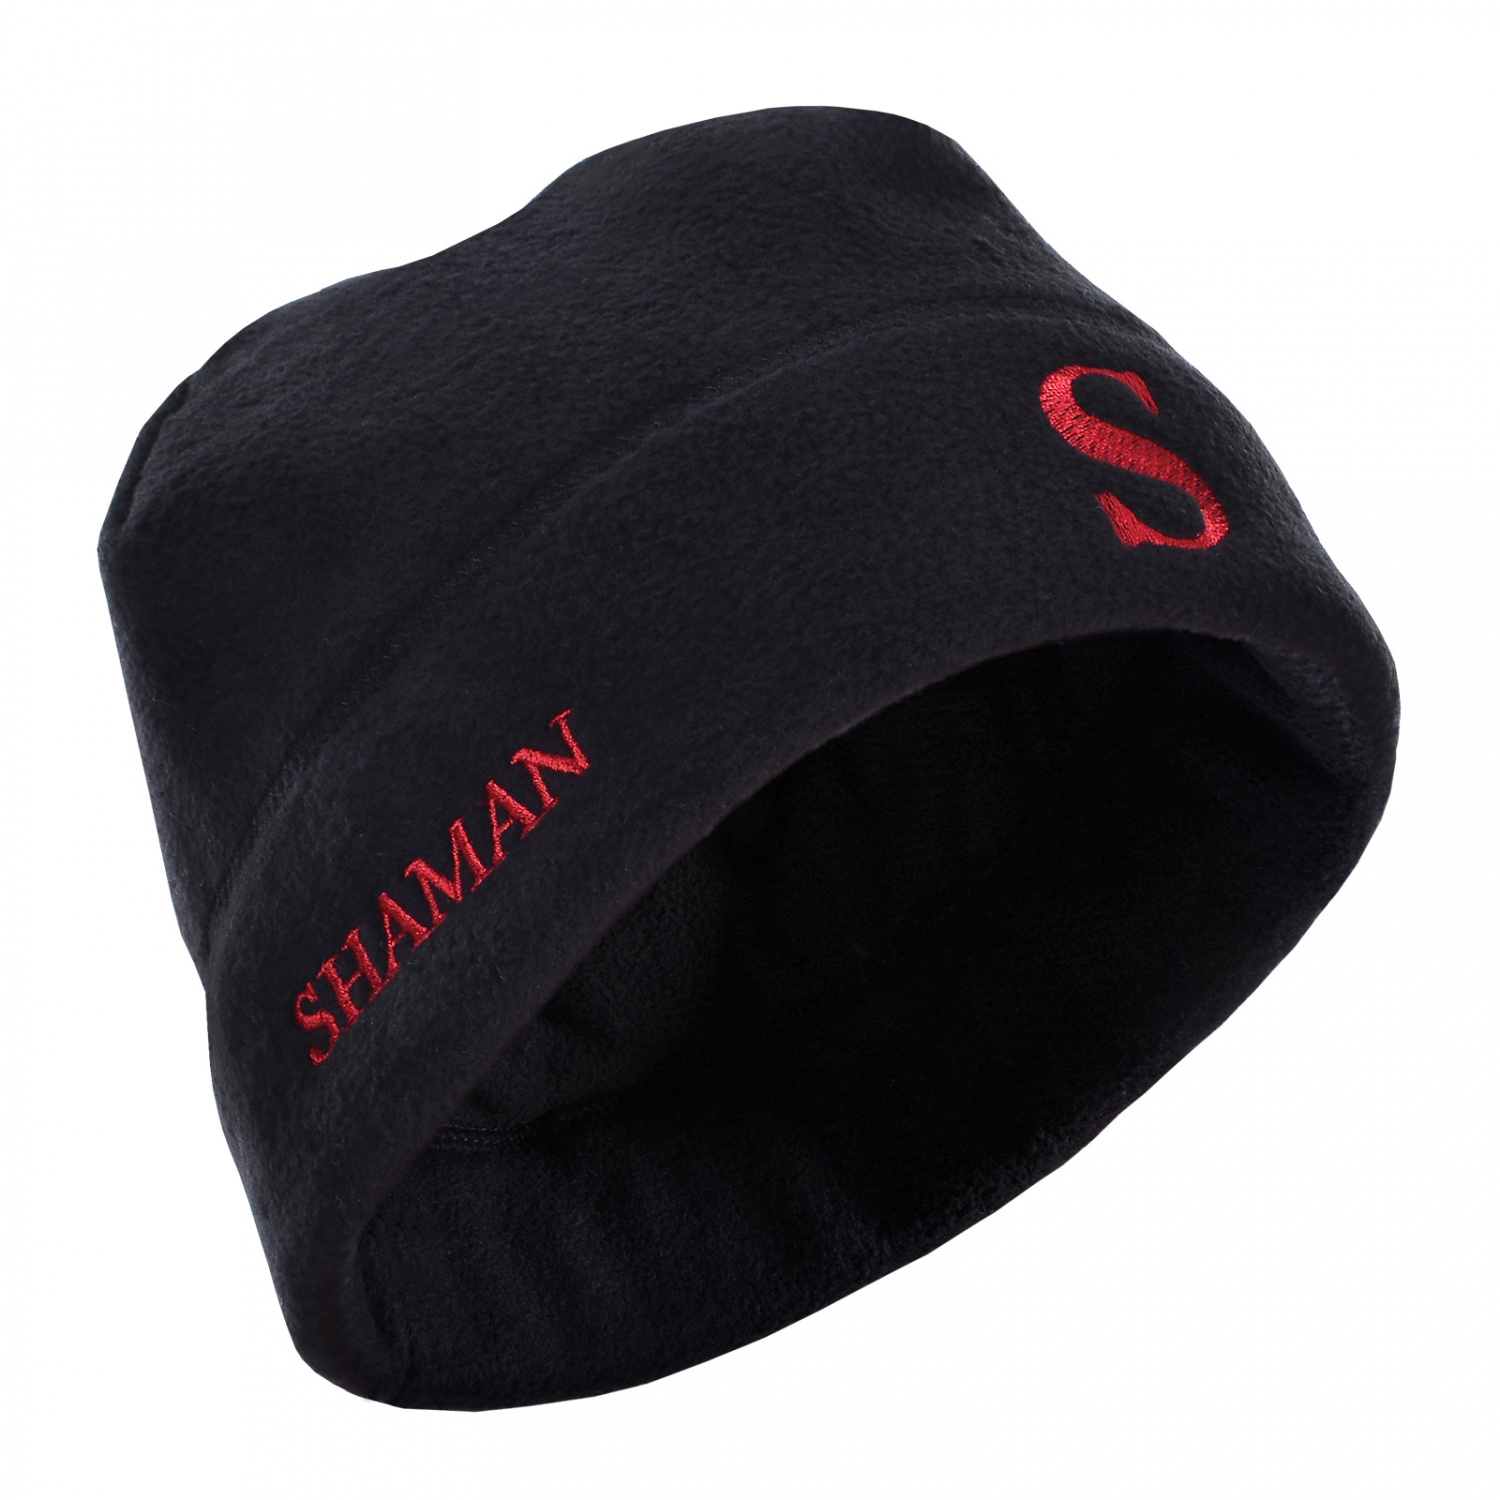 Шапка Shaman черная с красной вышивкой - фото 1